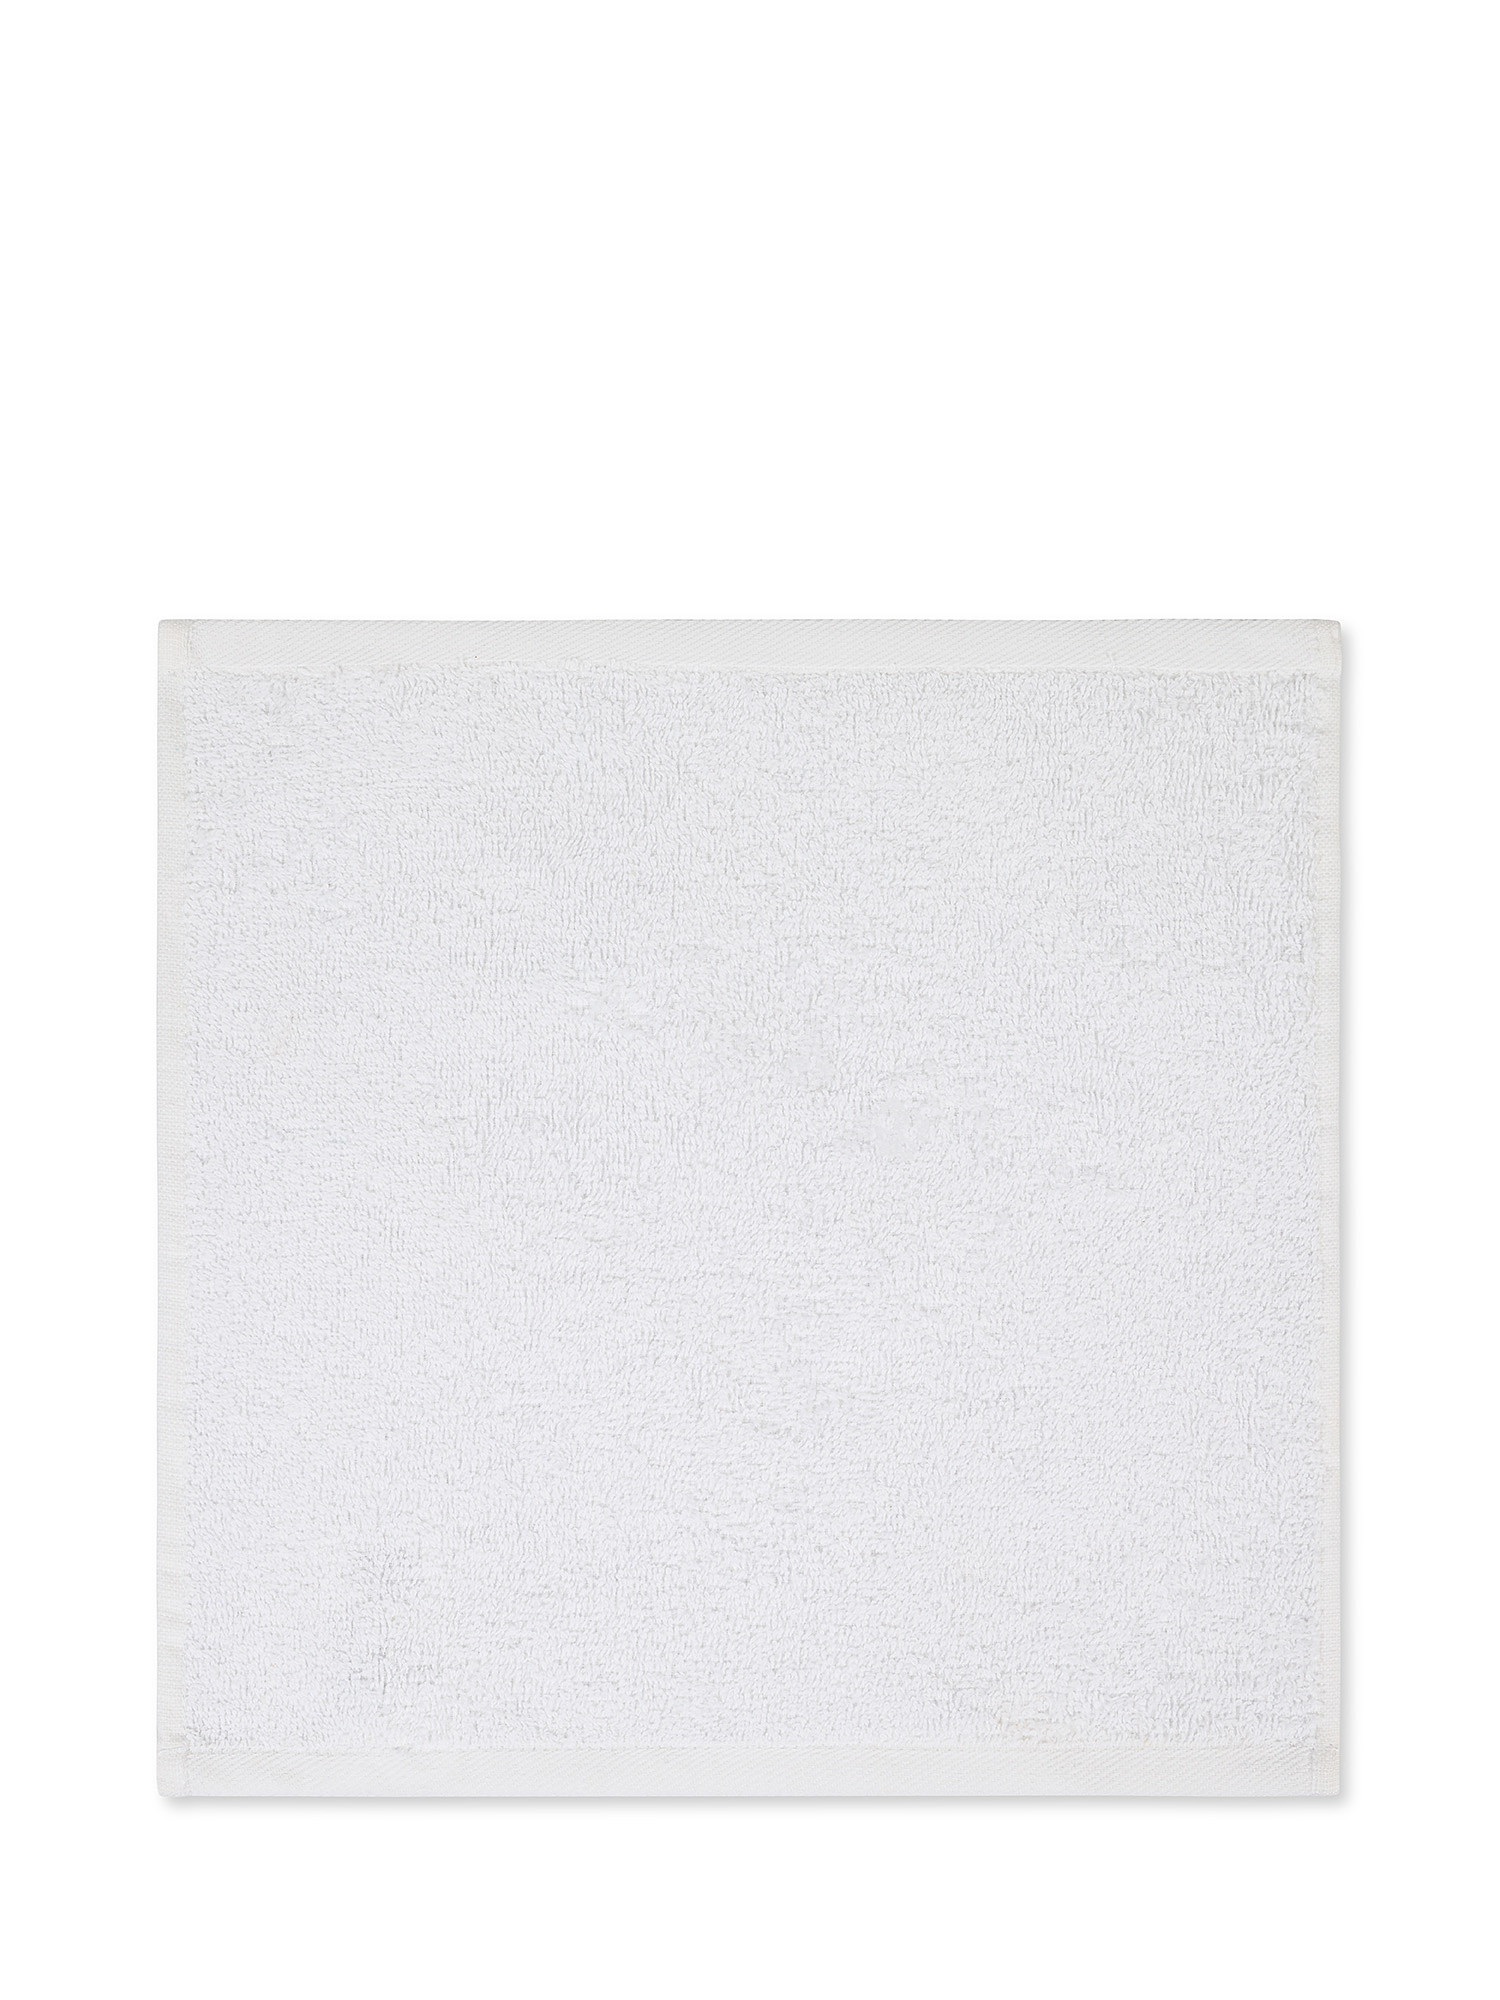 Washcloth 30X30 cm, White, large image number 1